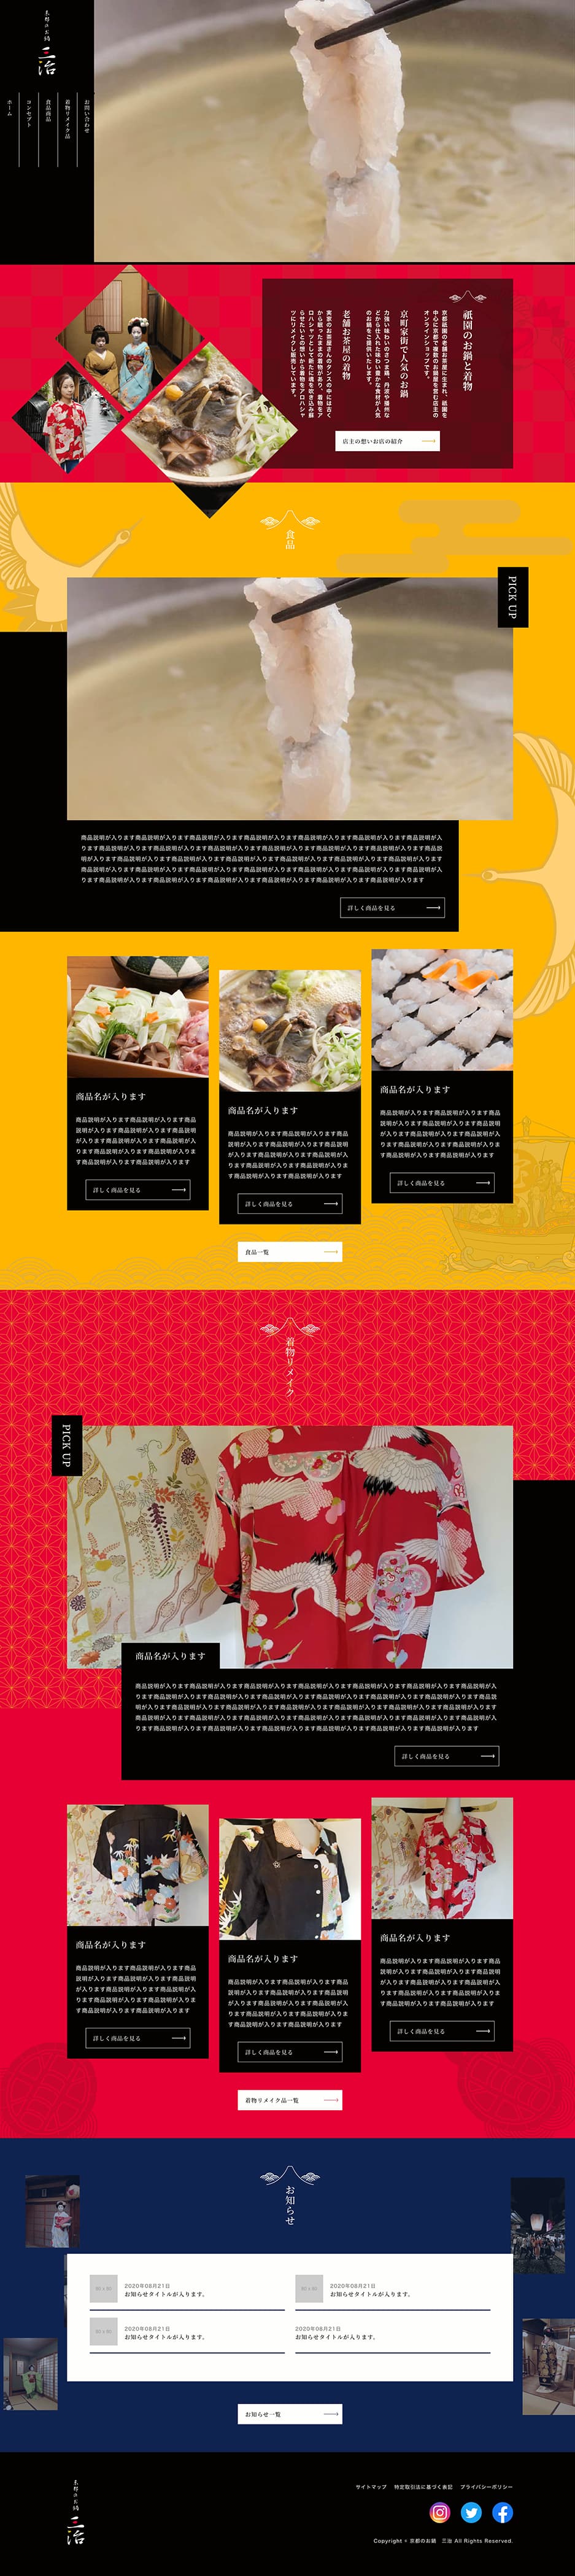 京都のお鍋 三治さまのホームページデザイン